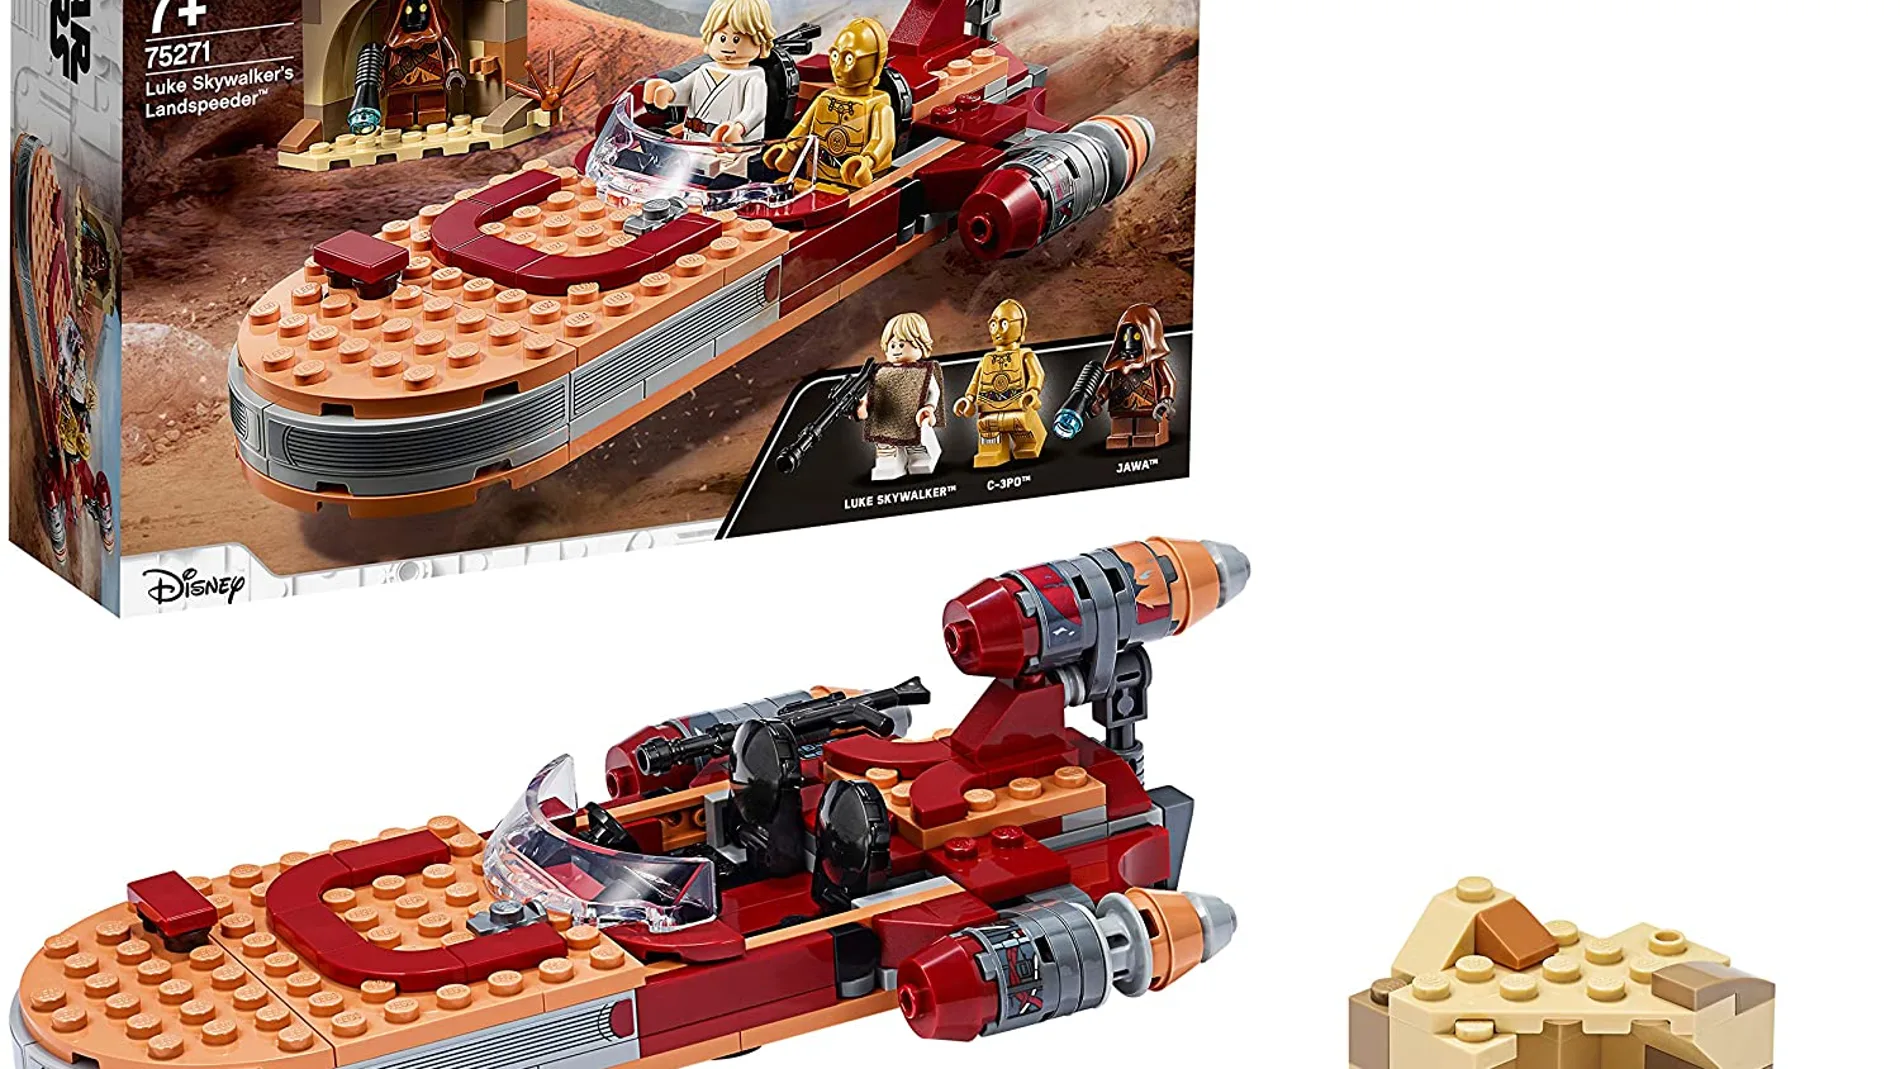 Rebajas en Lego: Star Wars nave de Luke Skywalker en oferta